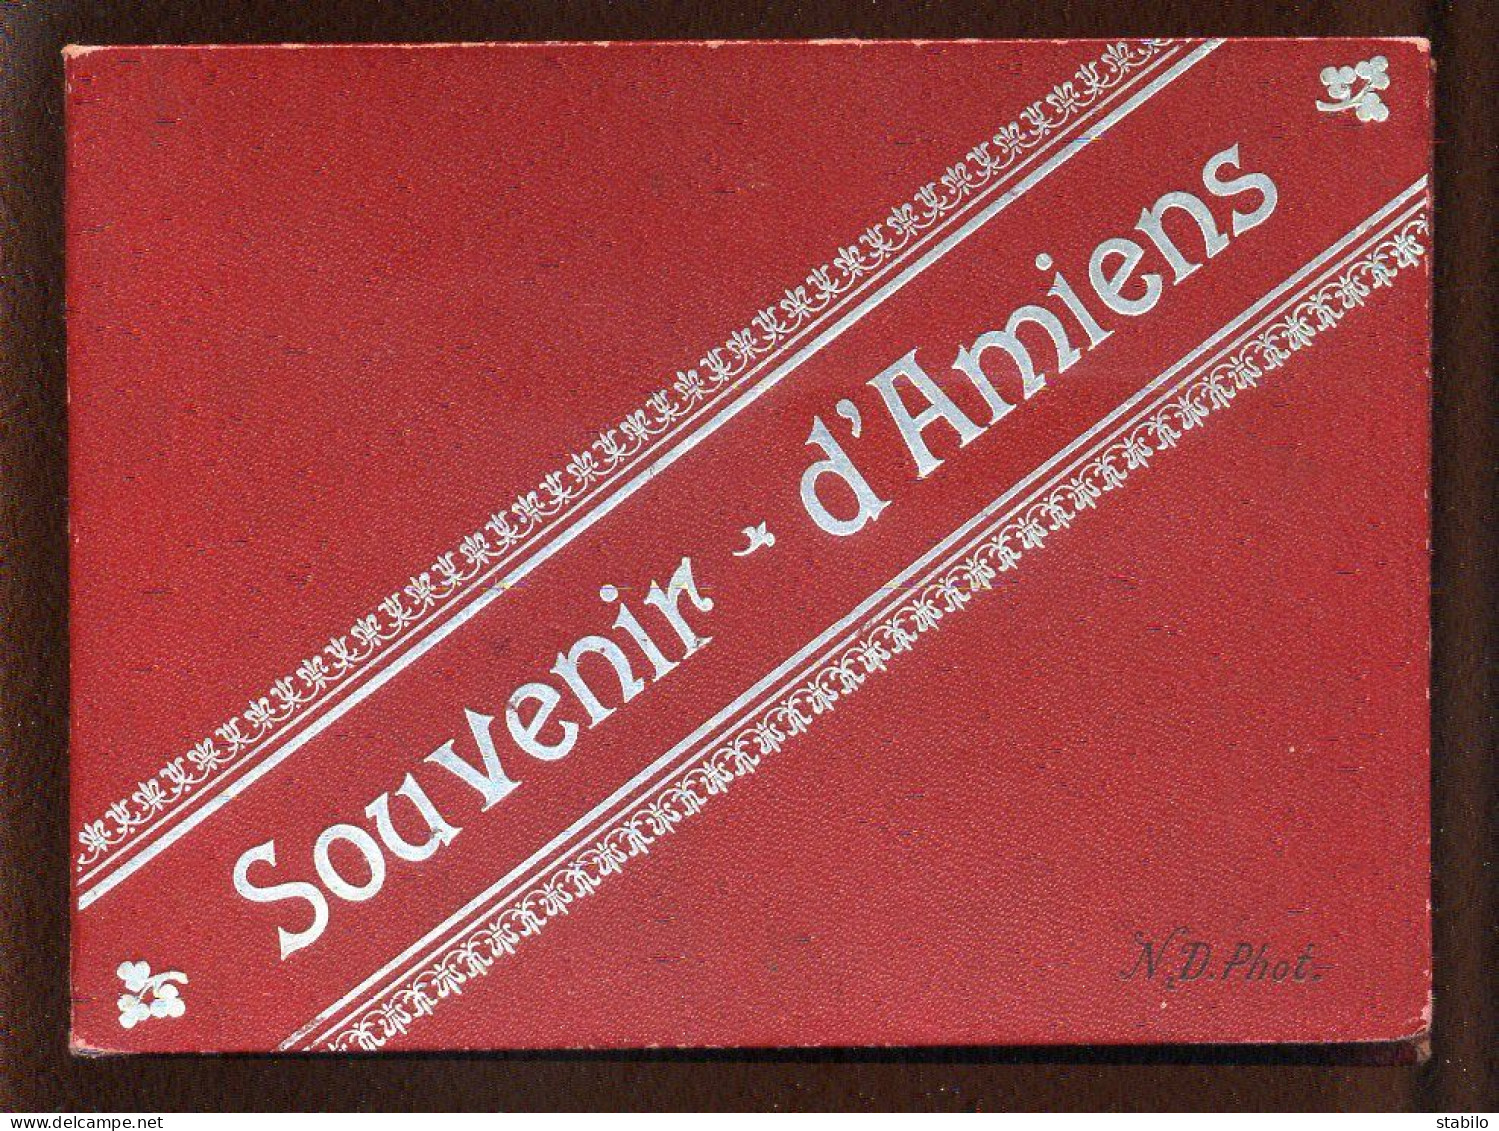 AMIENS (SOMME) - ALBUM SOUVENIR DE 12 VUES - EDITEUR ND PHOTO - FORMAT 15 X 11 CM - Non Classés